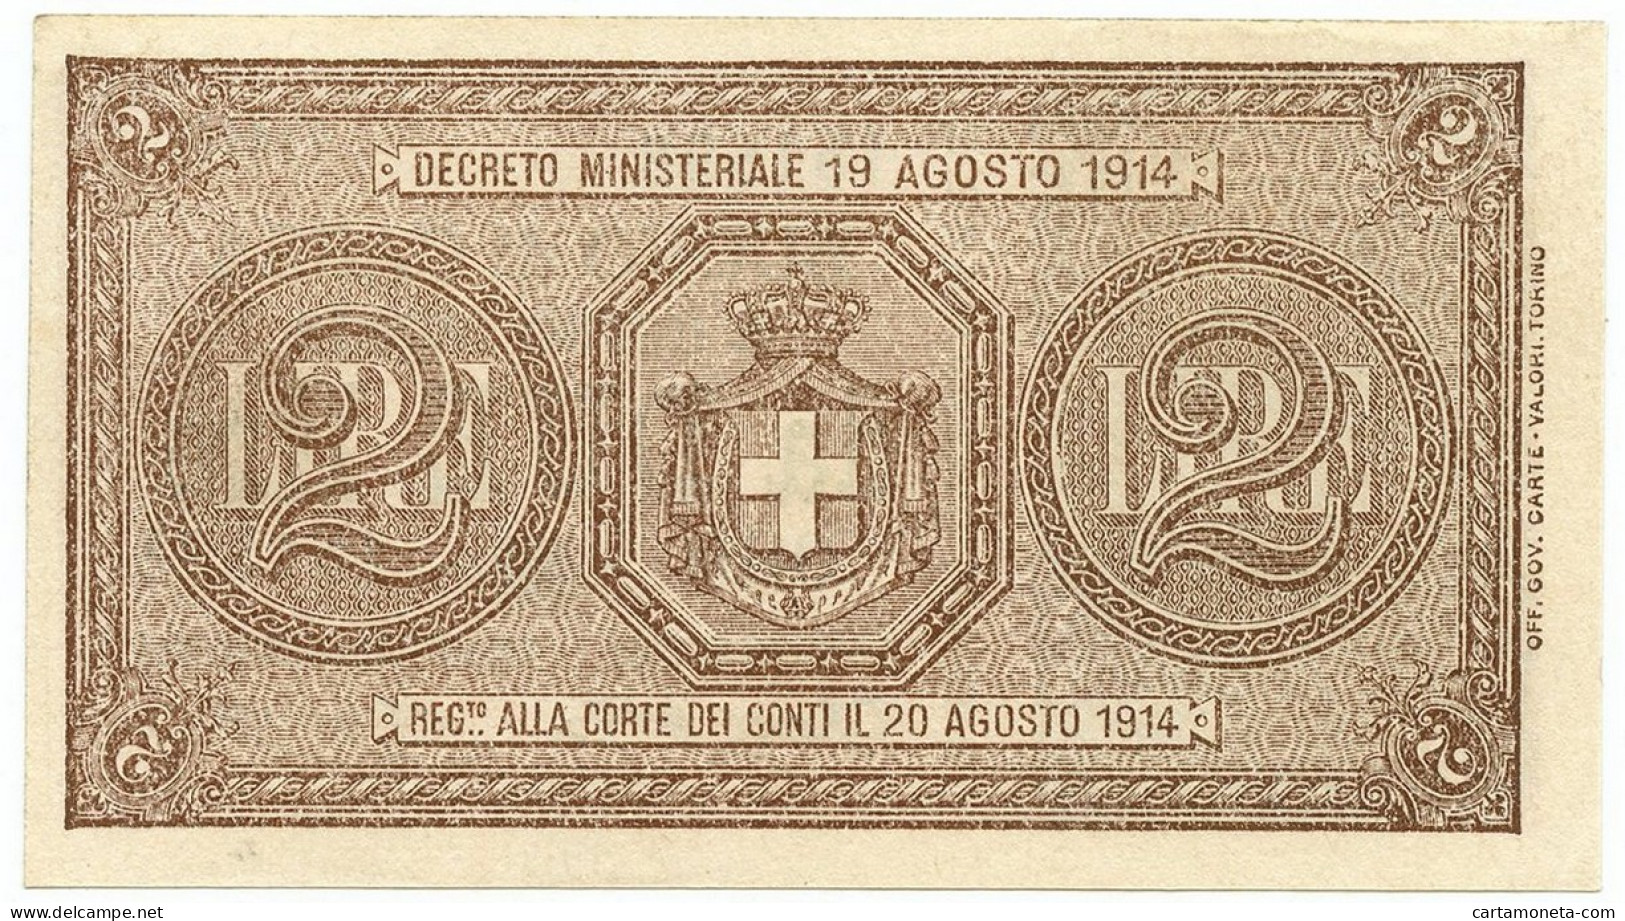 2 LIRE BUONO DI CASSA EFFIGE VITTORIO EMANUELE III 02/09/1914 QFDS - Regno D'Italia – Other